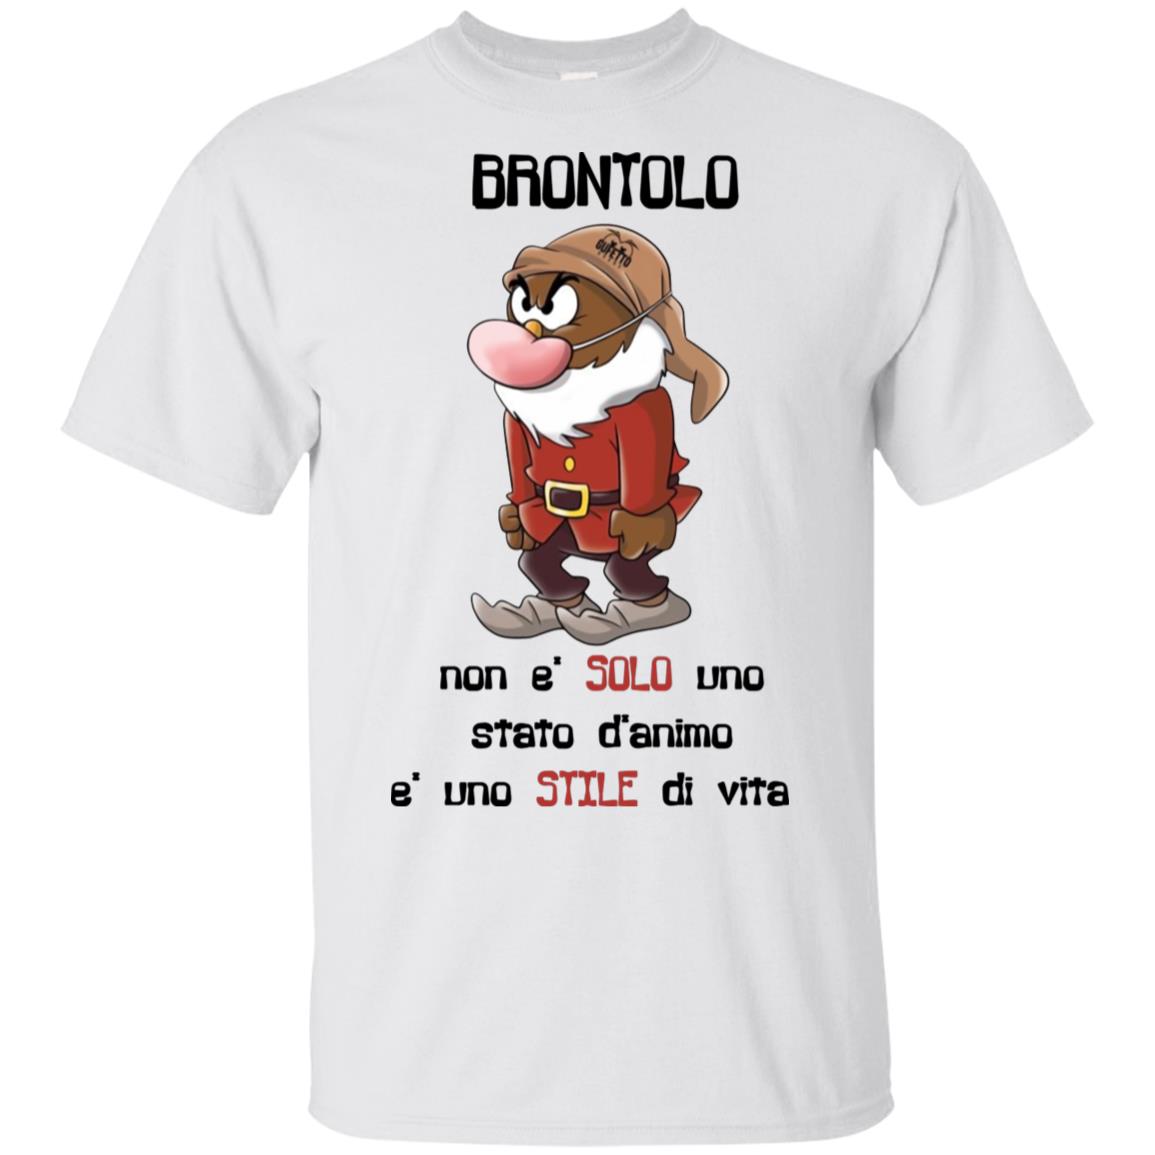 T-Shirt Donna Bambina Brontolo Non È Solo Uno Stato D/'ANIMO È Uno Stile di Vita